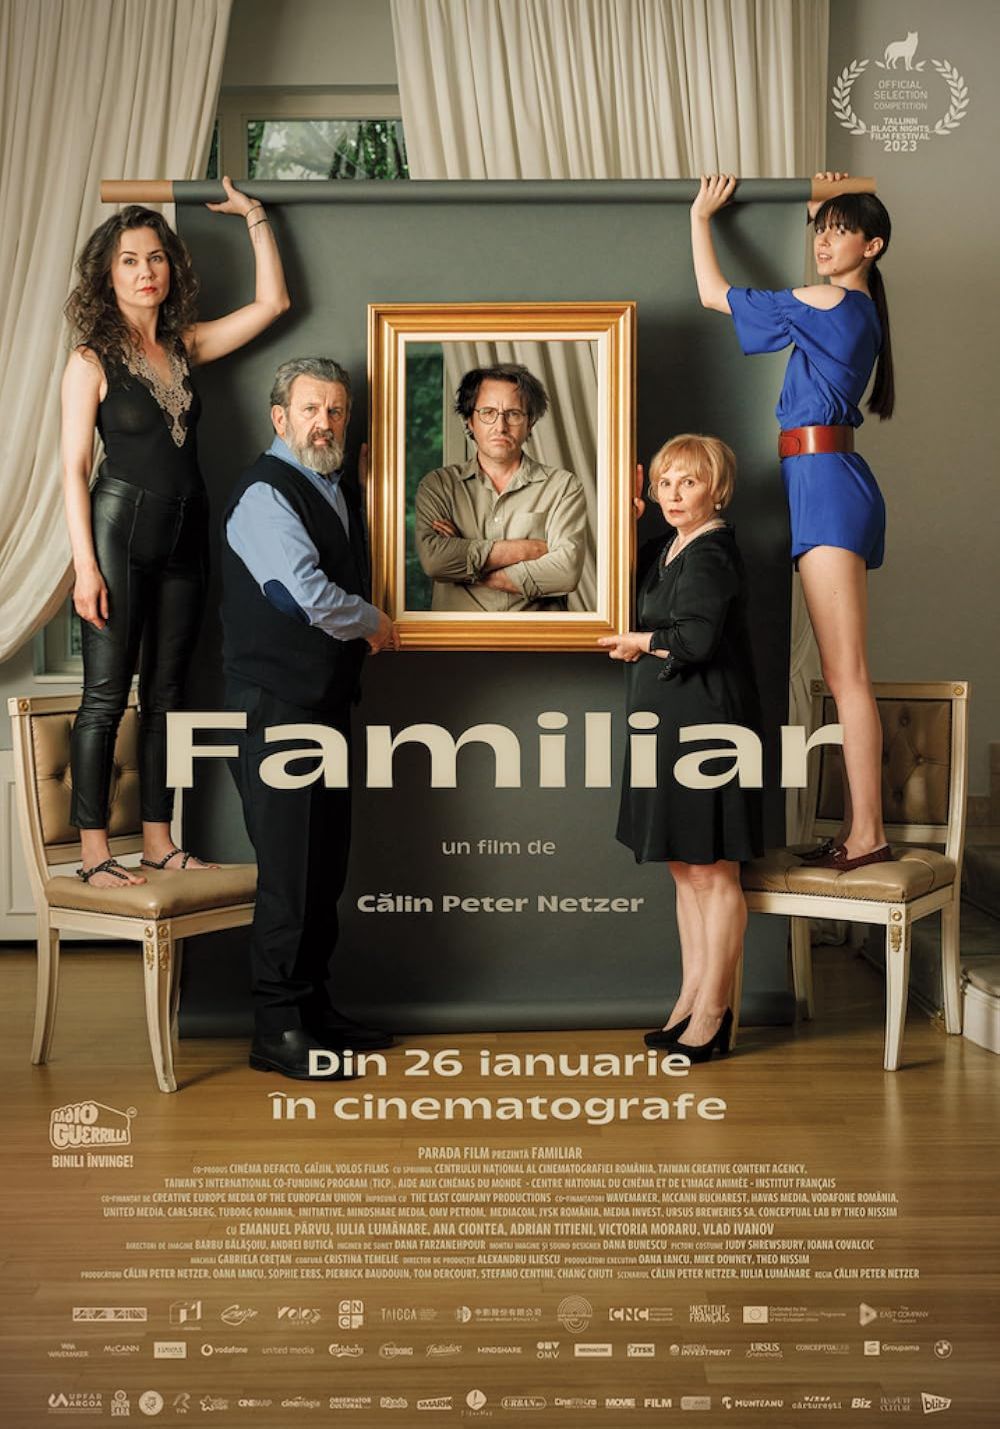 Poster al filmului "Familiar"